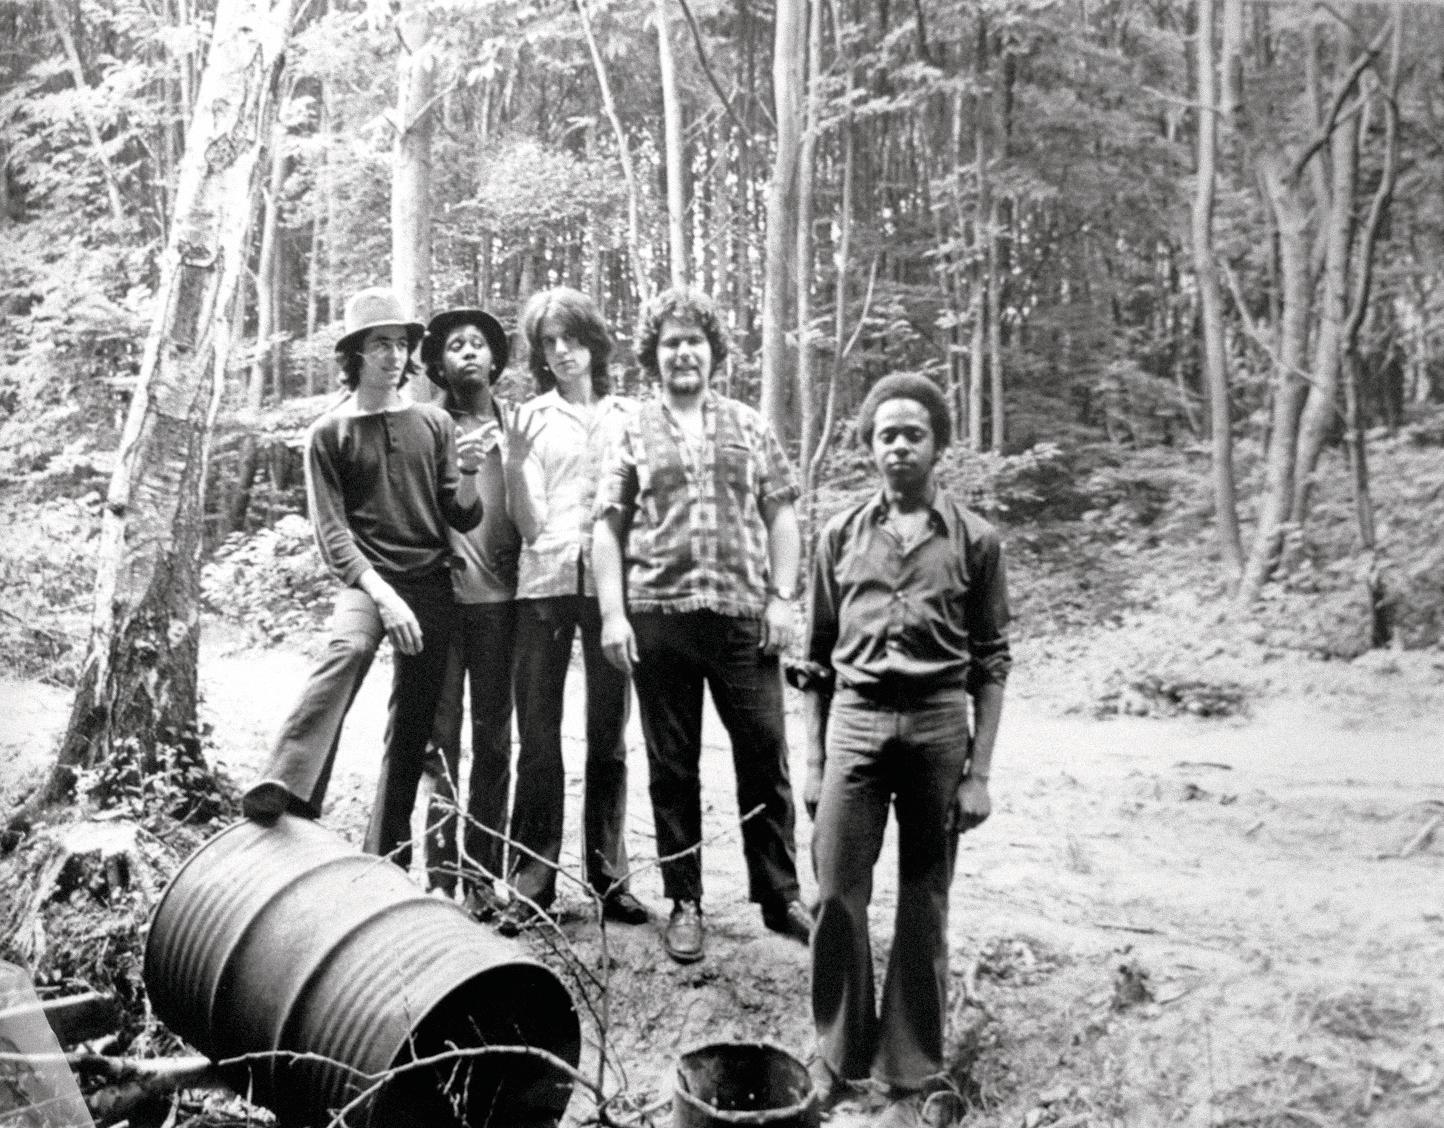 Le groupe les Phalanters vers 1970, de gauche à droite : Jean Jacques Goldman, Chris Francfort, Jean Bender, Paul Ferrette et Alex Francfort. Collection privée